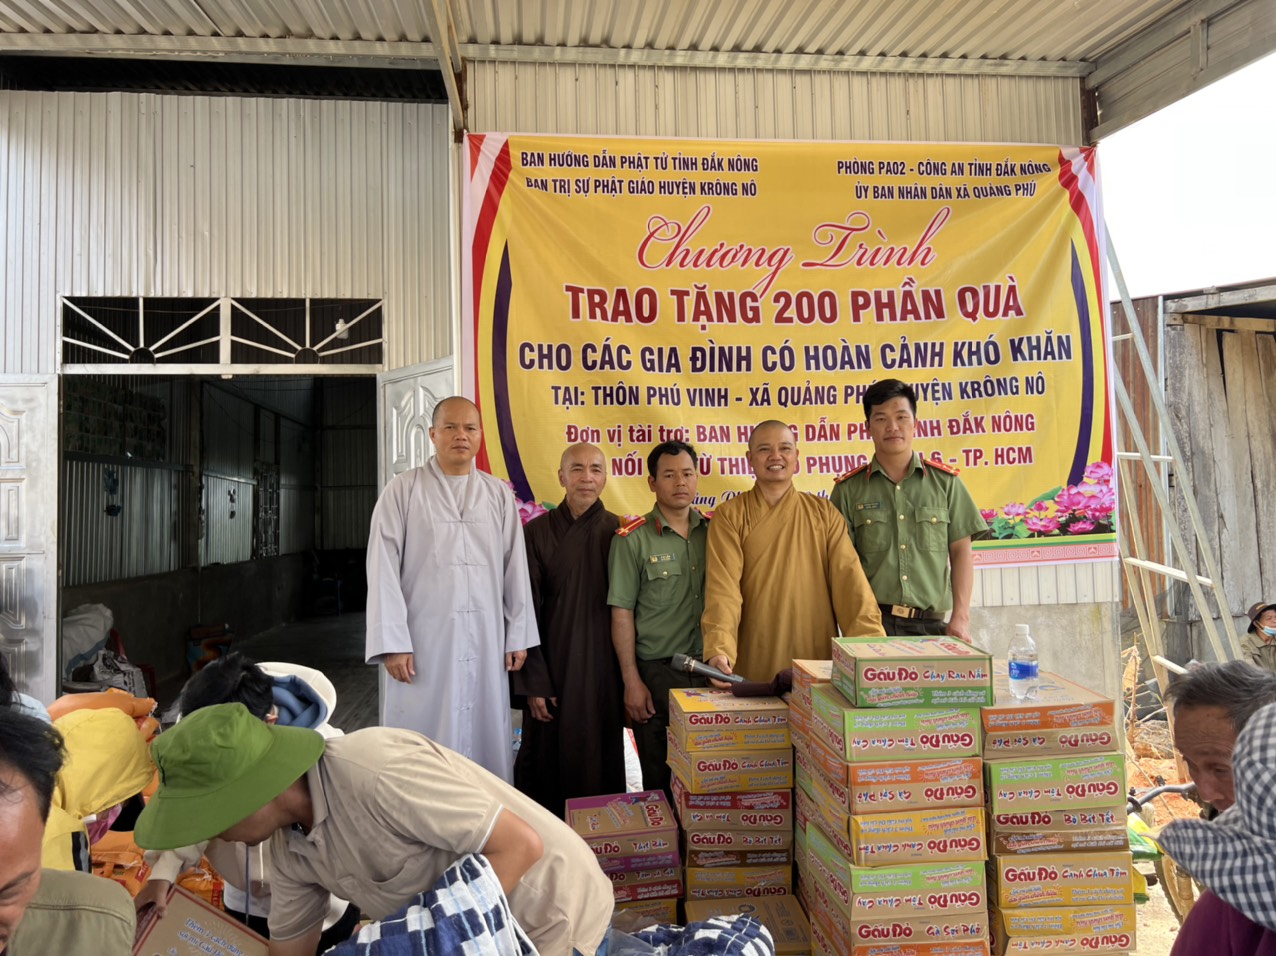 Ban Hướng dẫn Phật tử tỉnh Đăk Nông trao tặng 200 phần quà cho bà con đồng bào H’Mông tại huyện K’Rông Nô